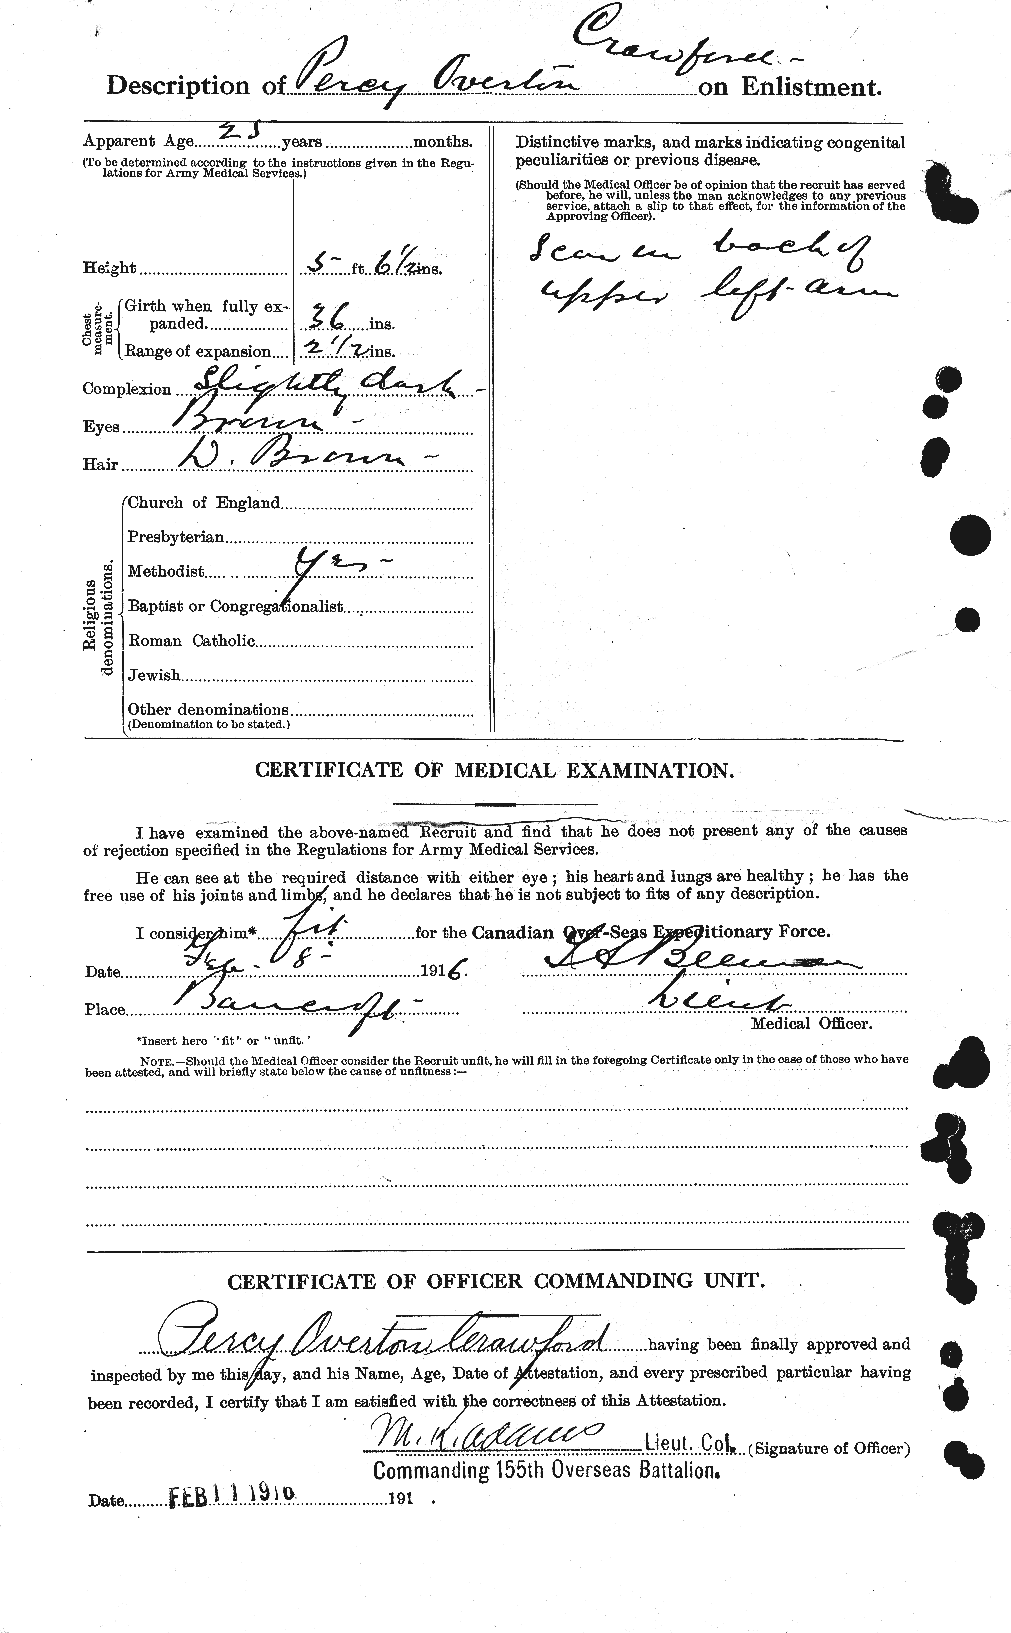 Dossiers du Personnel de la Première Guerre mondiale - CEC 061655b